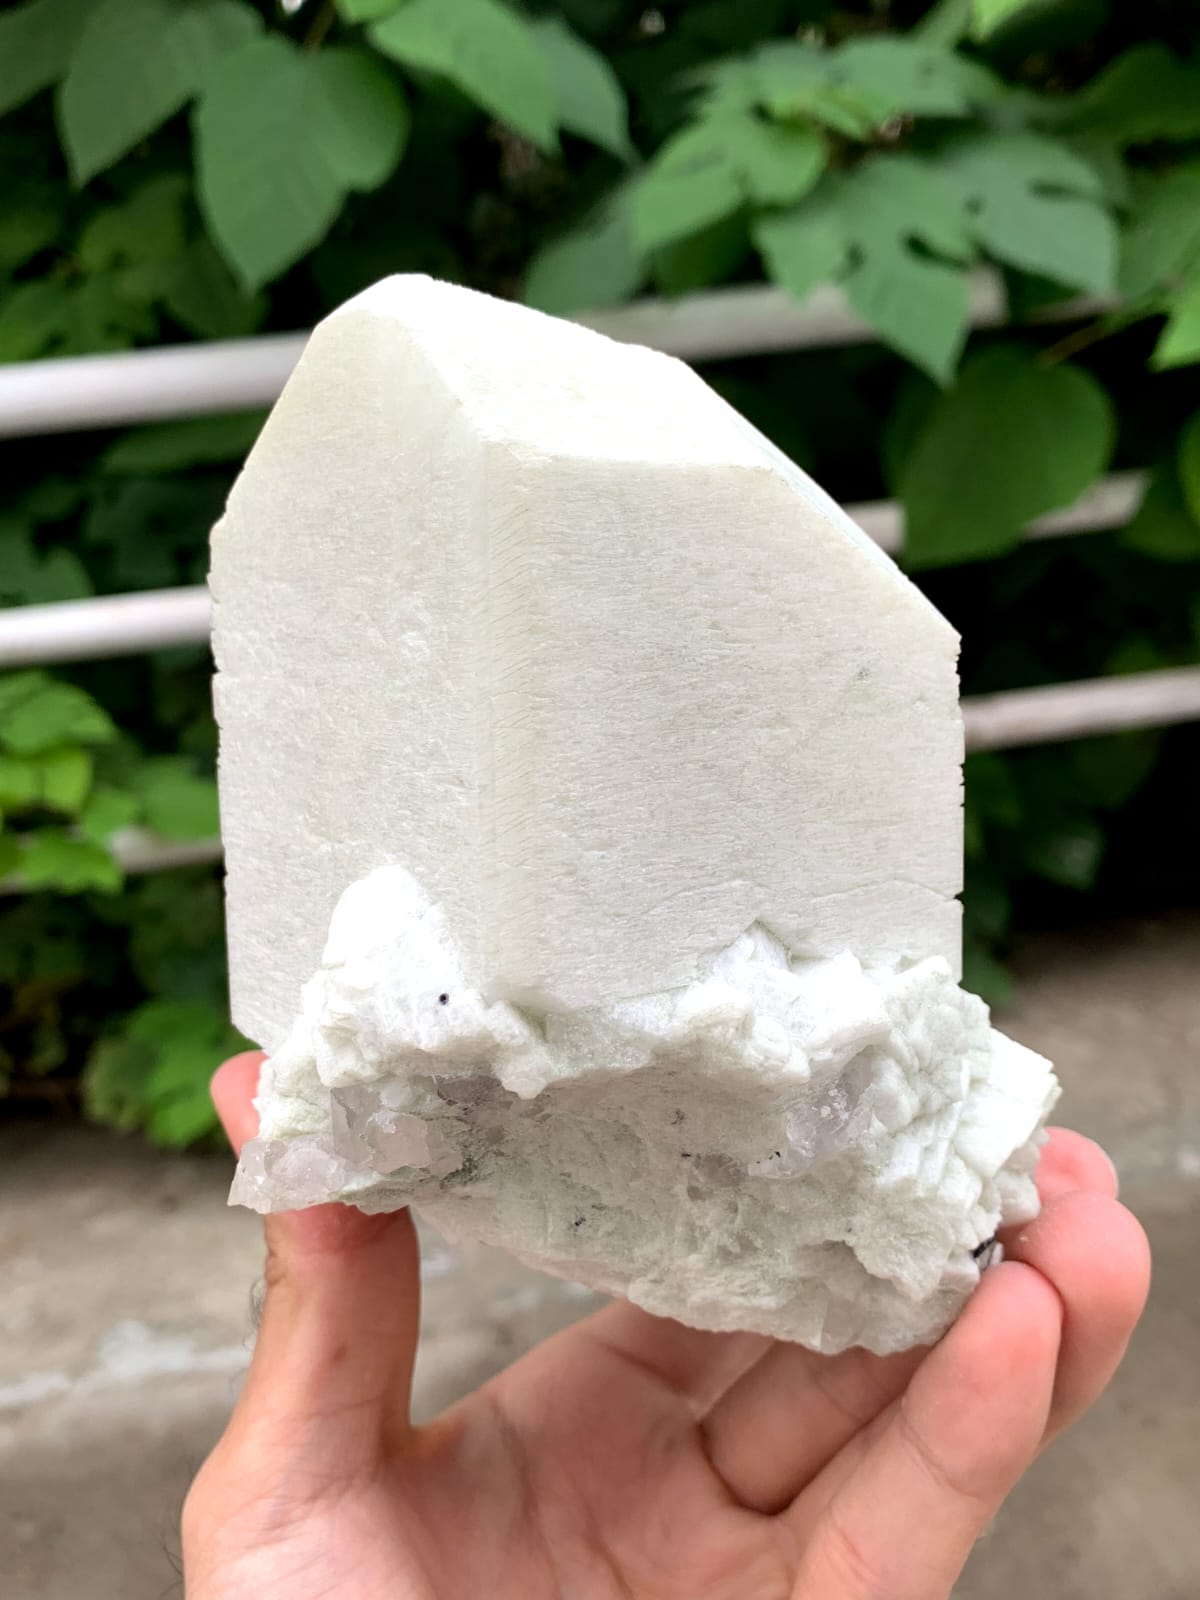 Lovely Milky White Microcline Feldspar On Cleavelandite With Quartz